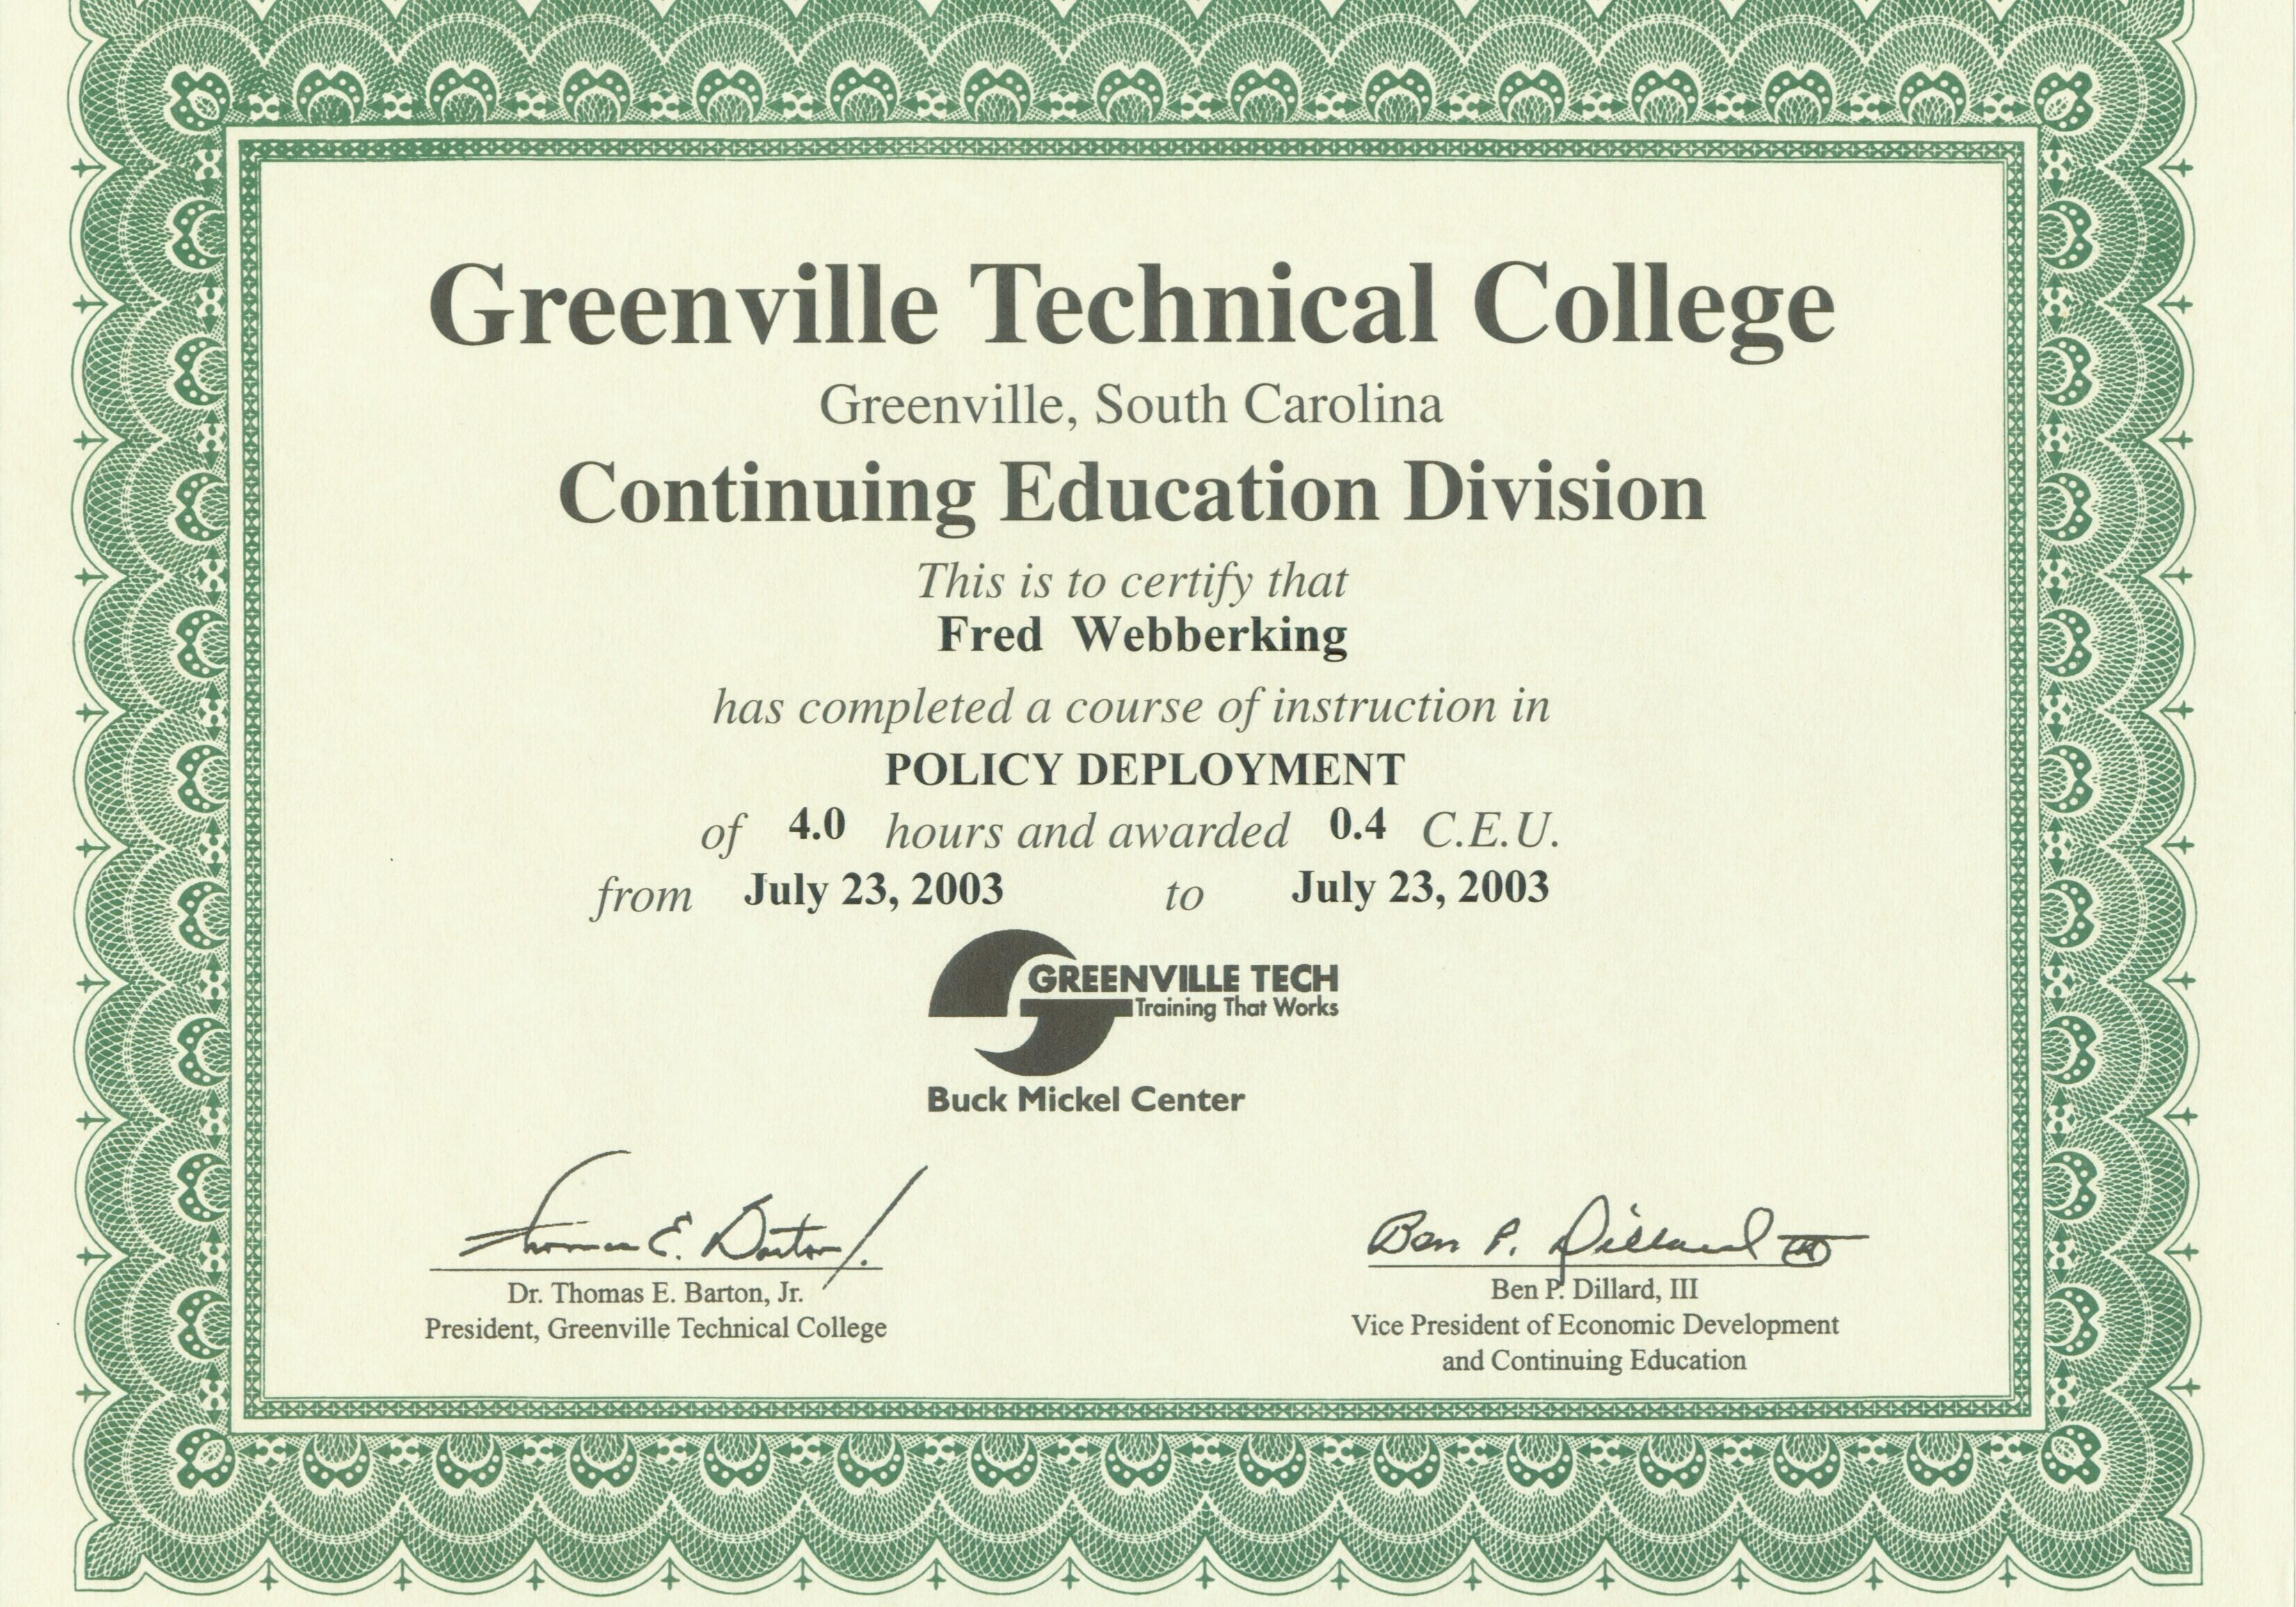 Certificate 15